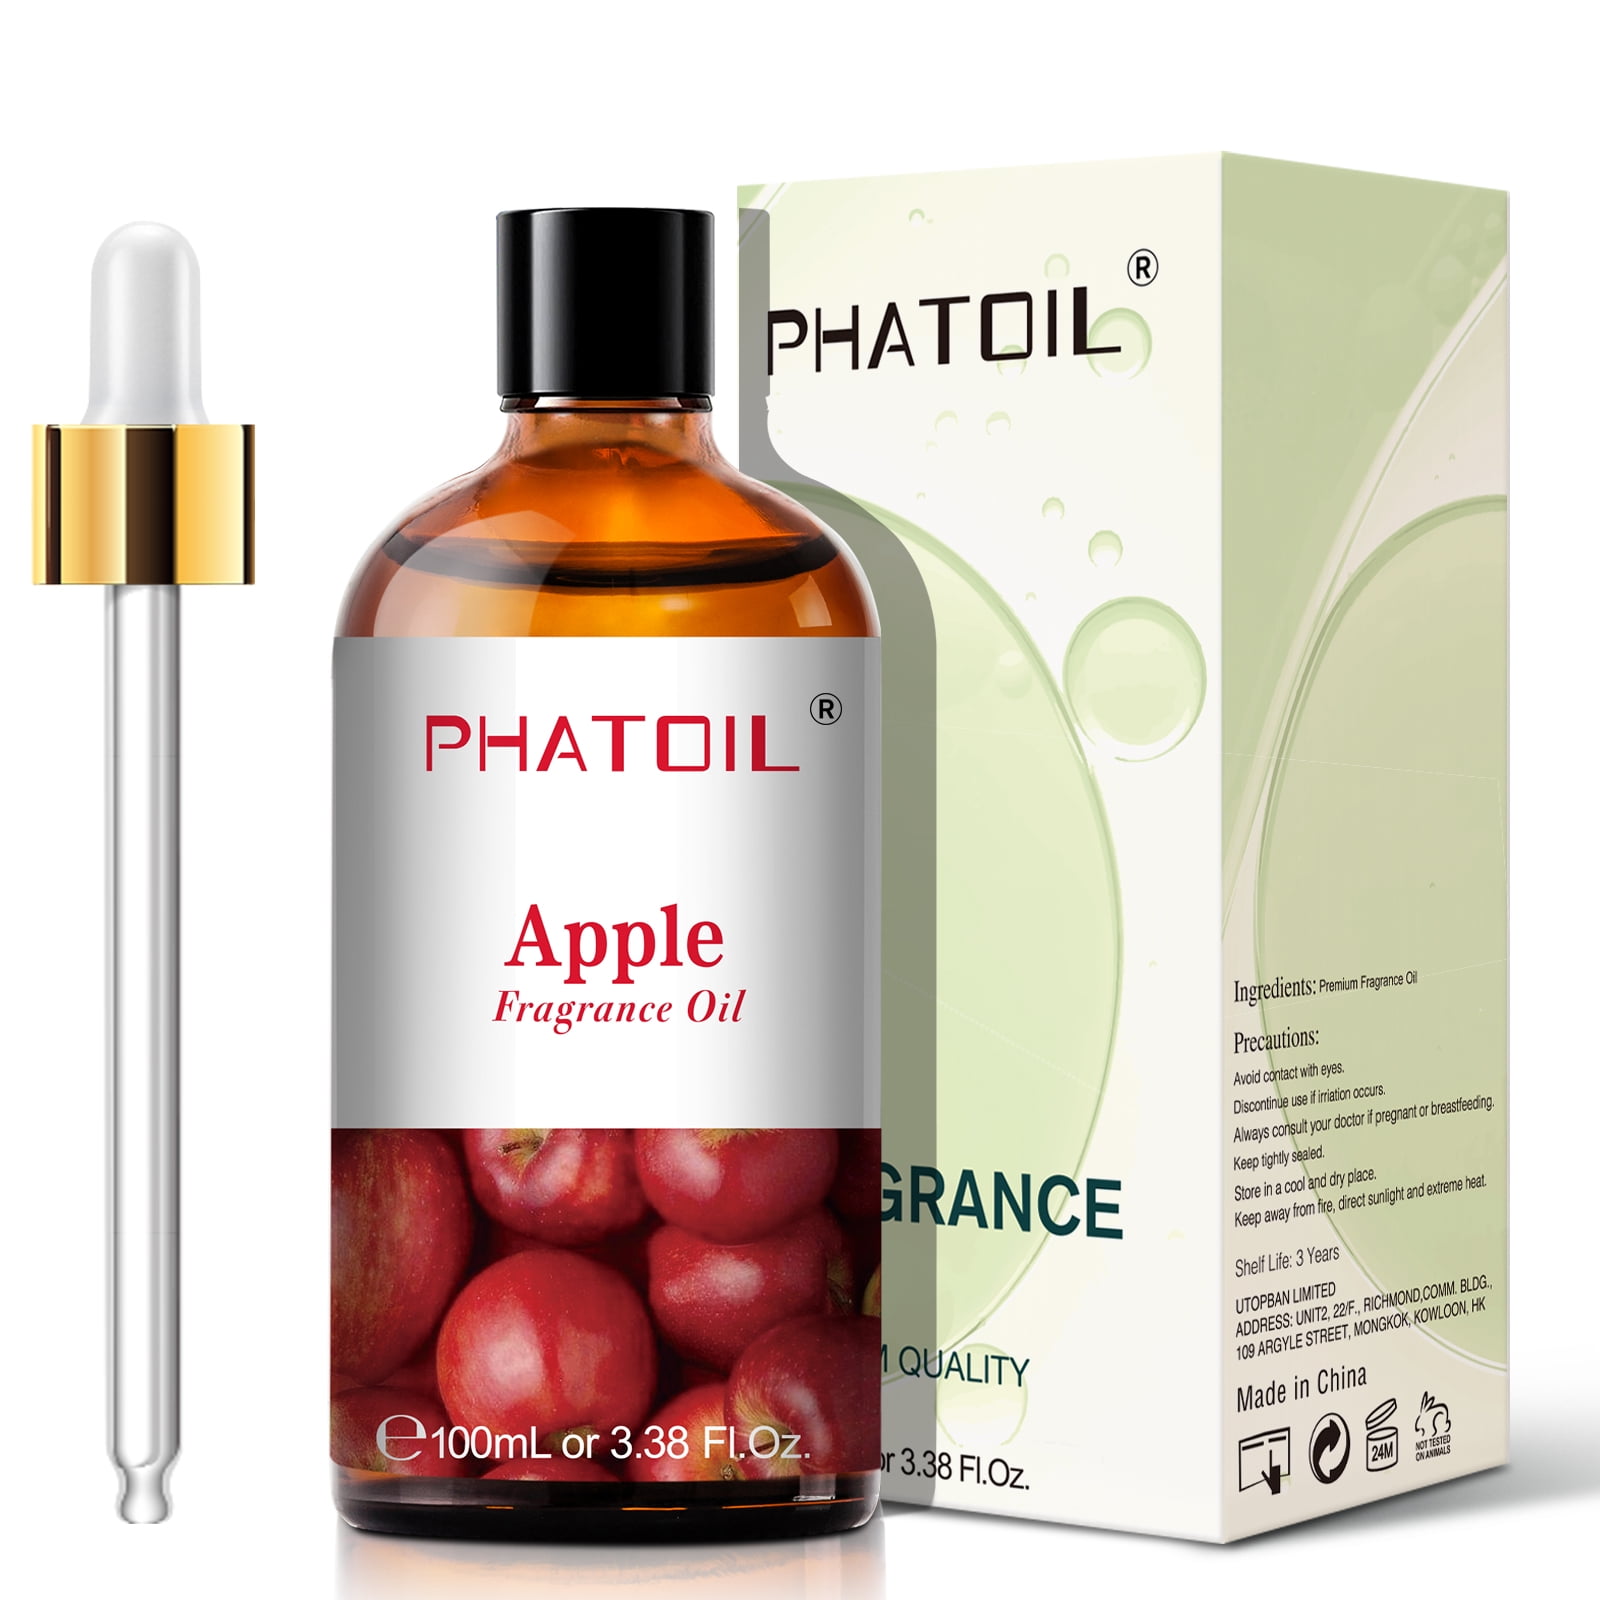 PHATOIL 10ml Strawberry Fragrance Oil Fruit Perfume Making Coconut